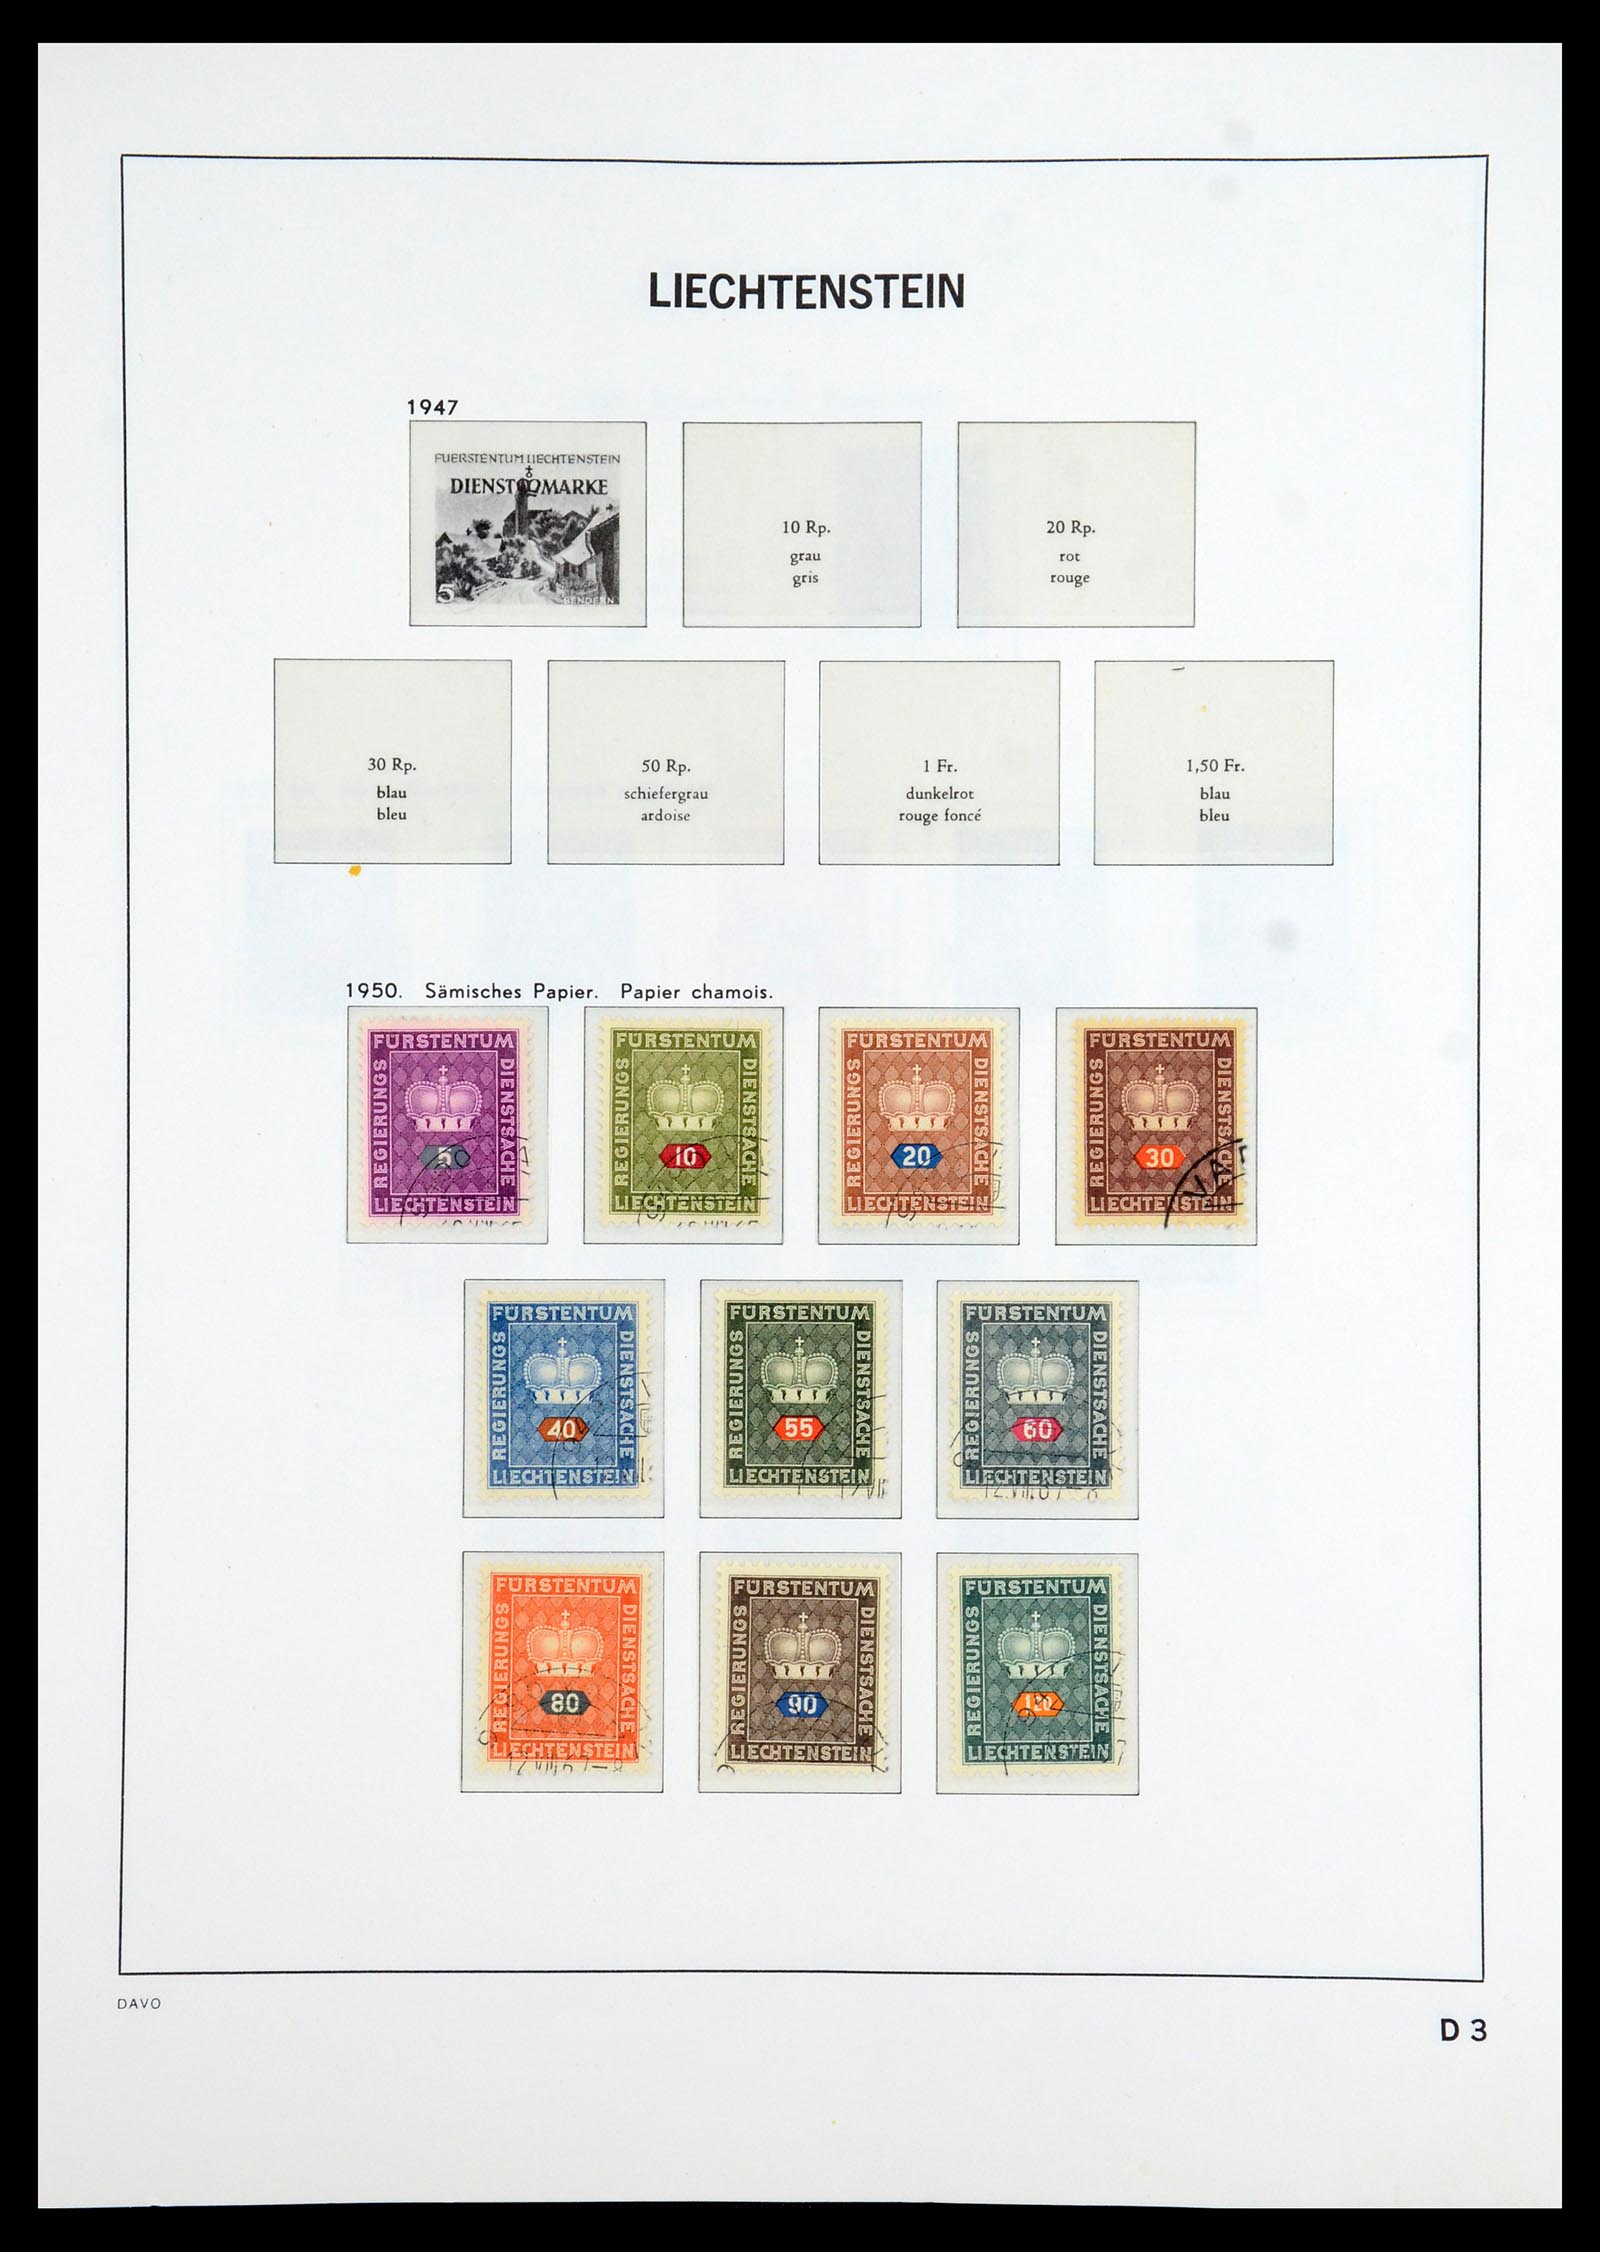 35896 101 - Postzegelverzameling 35896 Liechtenstein 1912-1990.